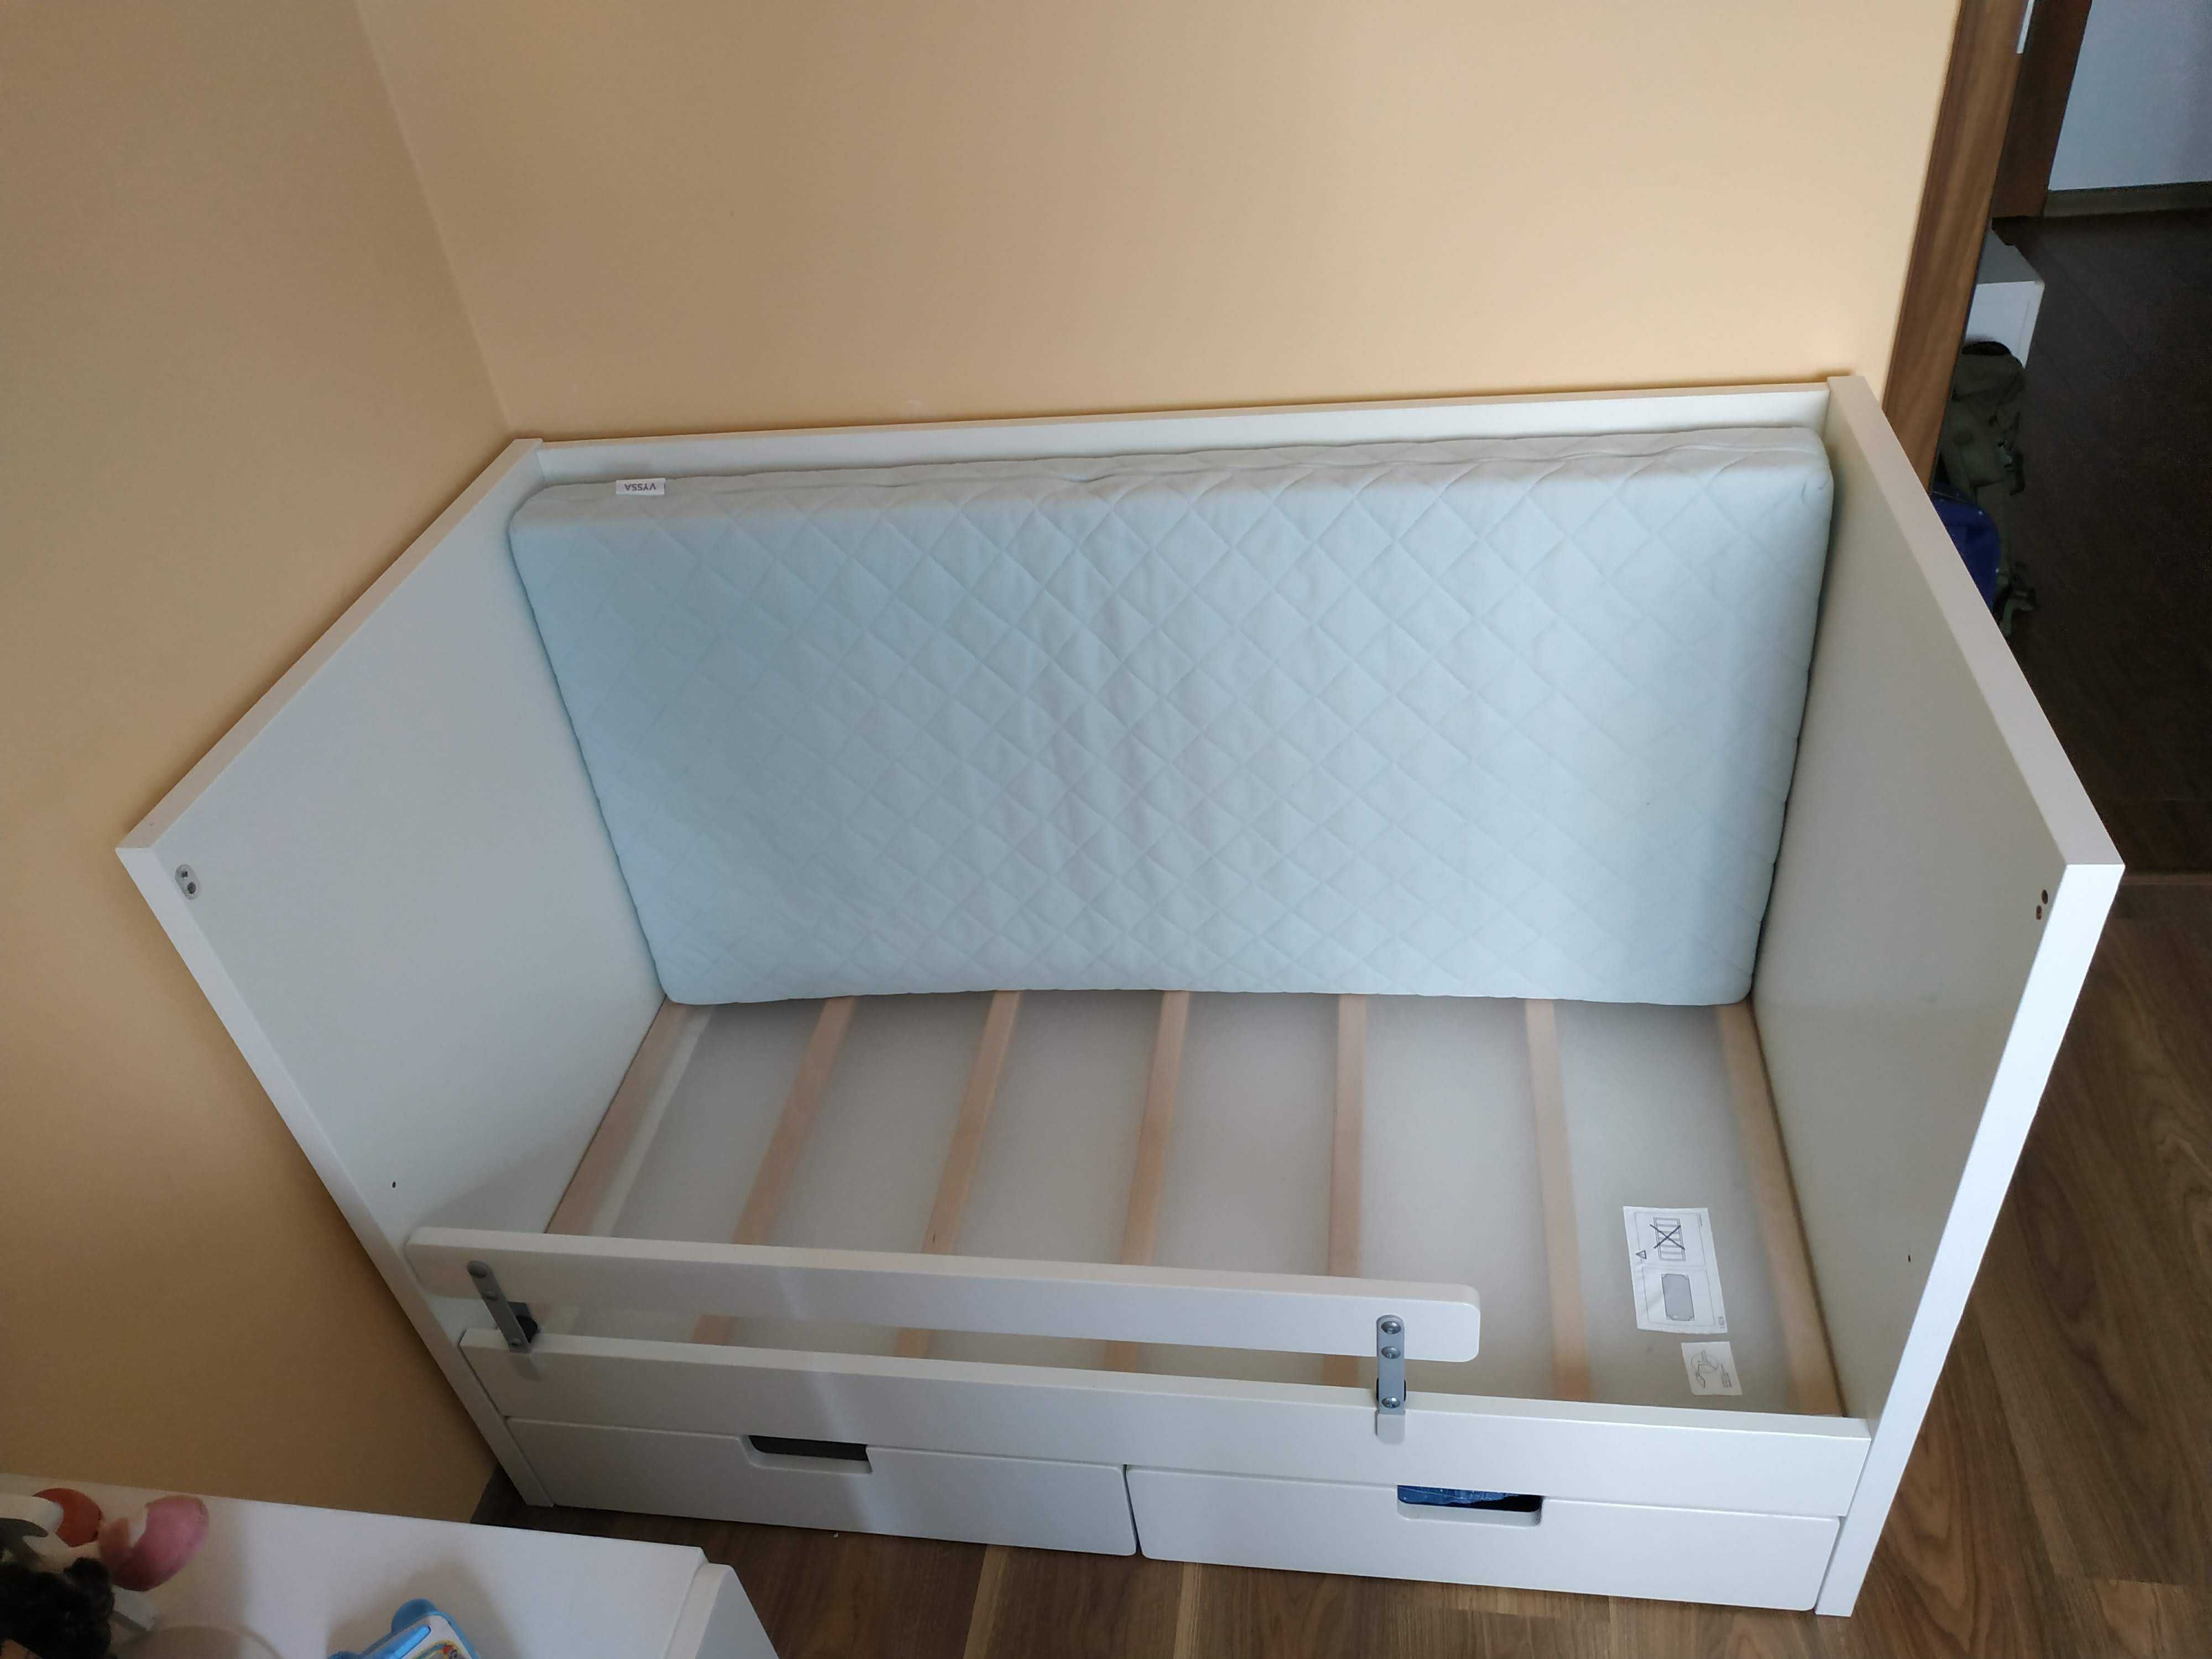 Łóżeczko niemowlęce Ikea Stuva z szufladami + materac + barierka